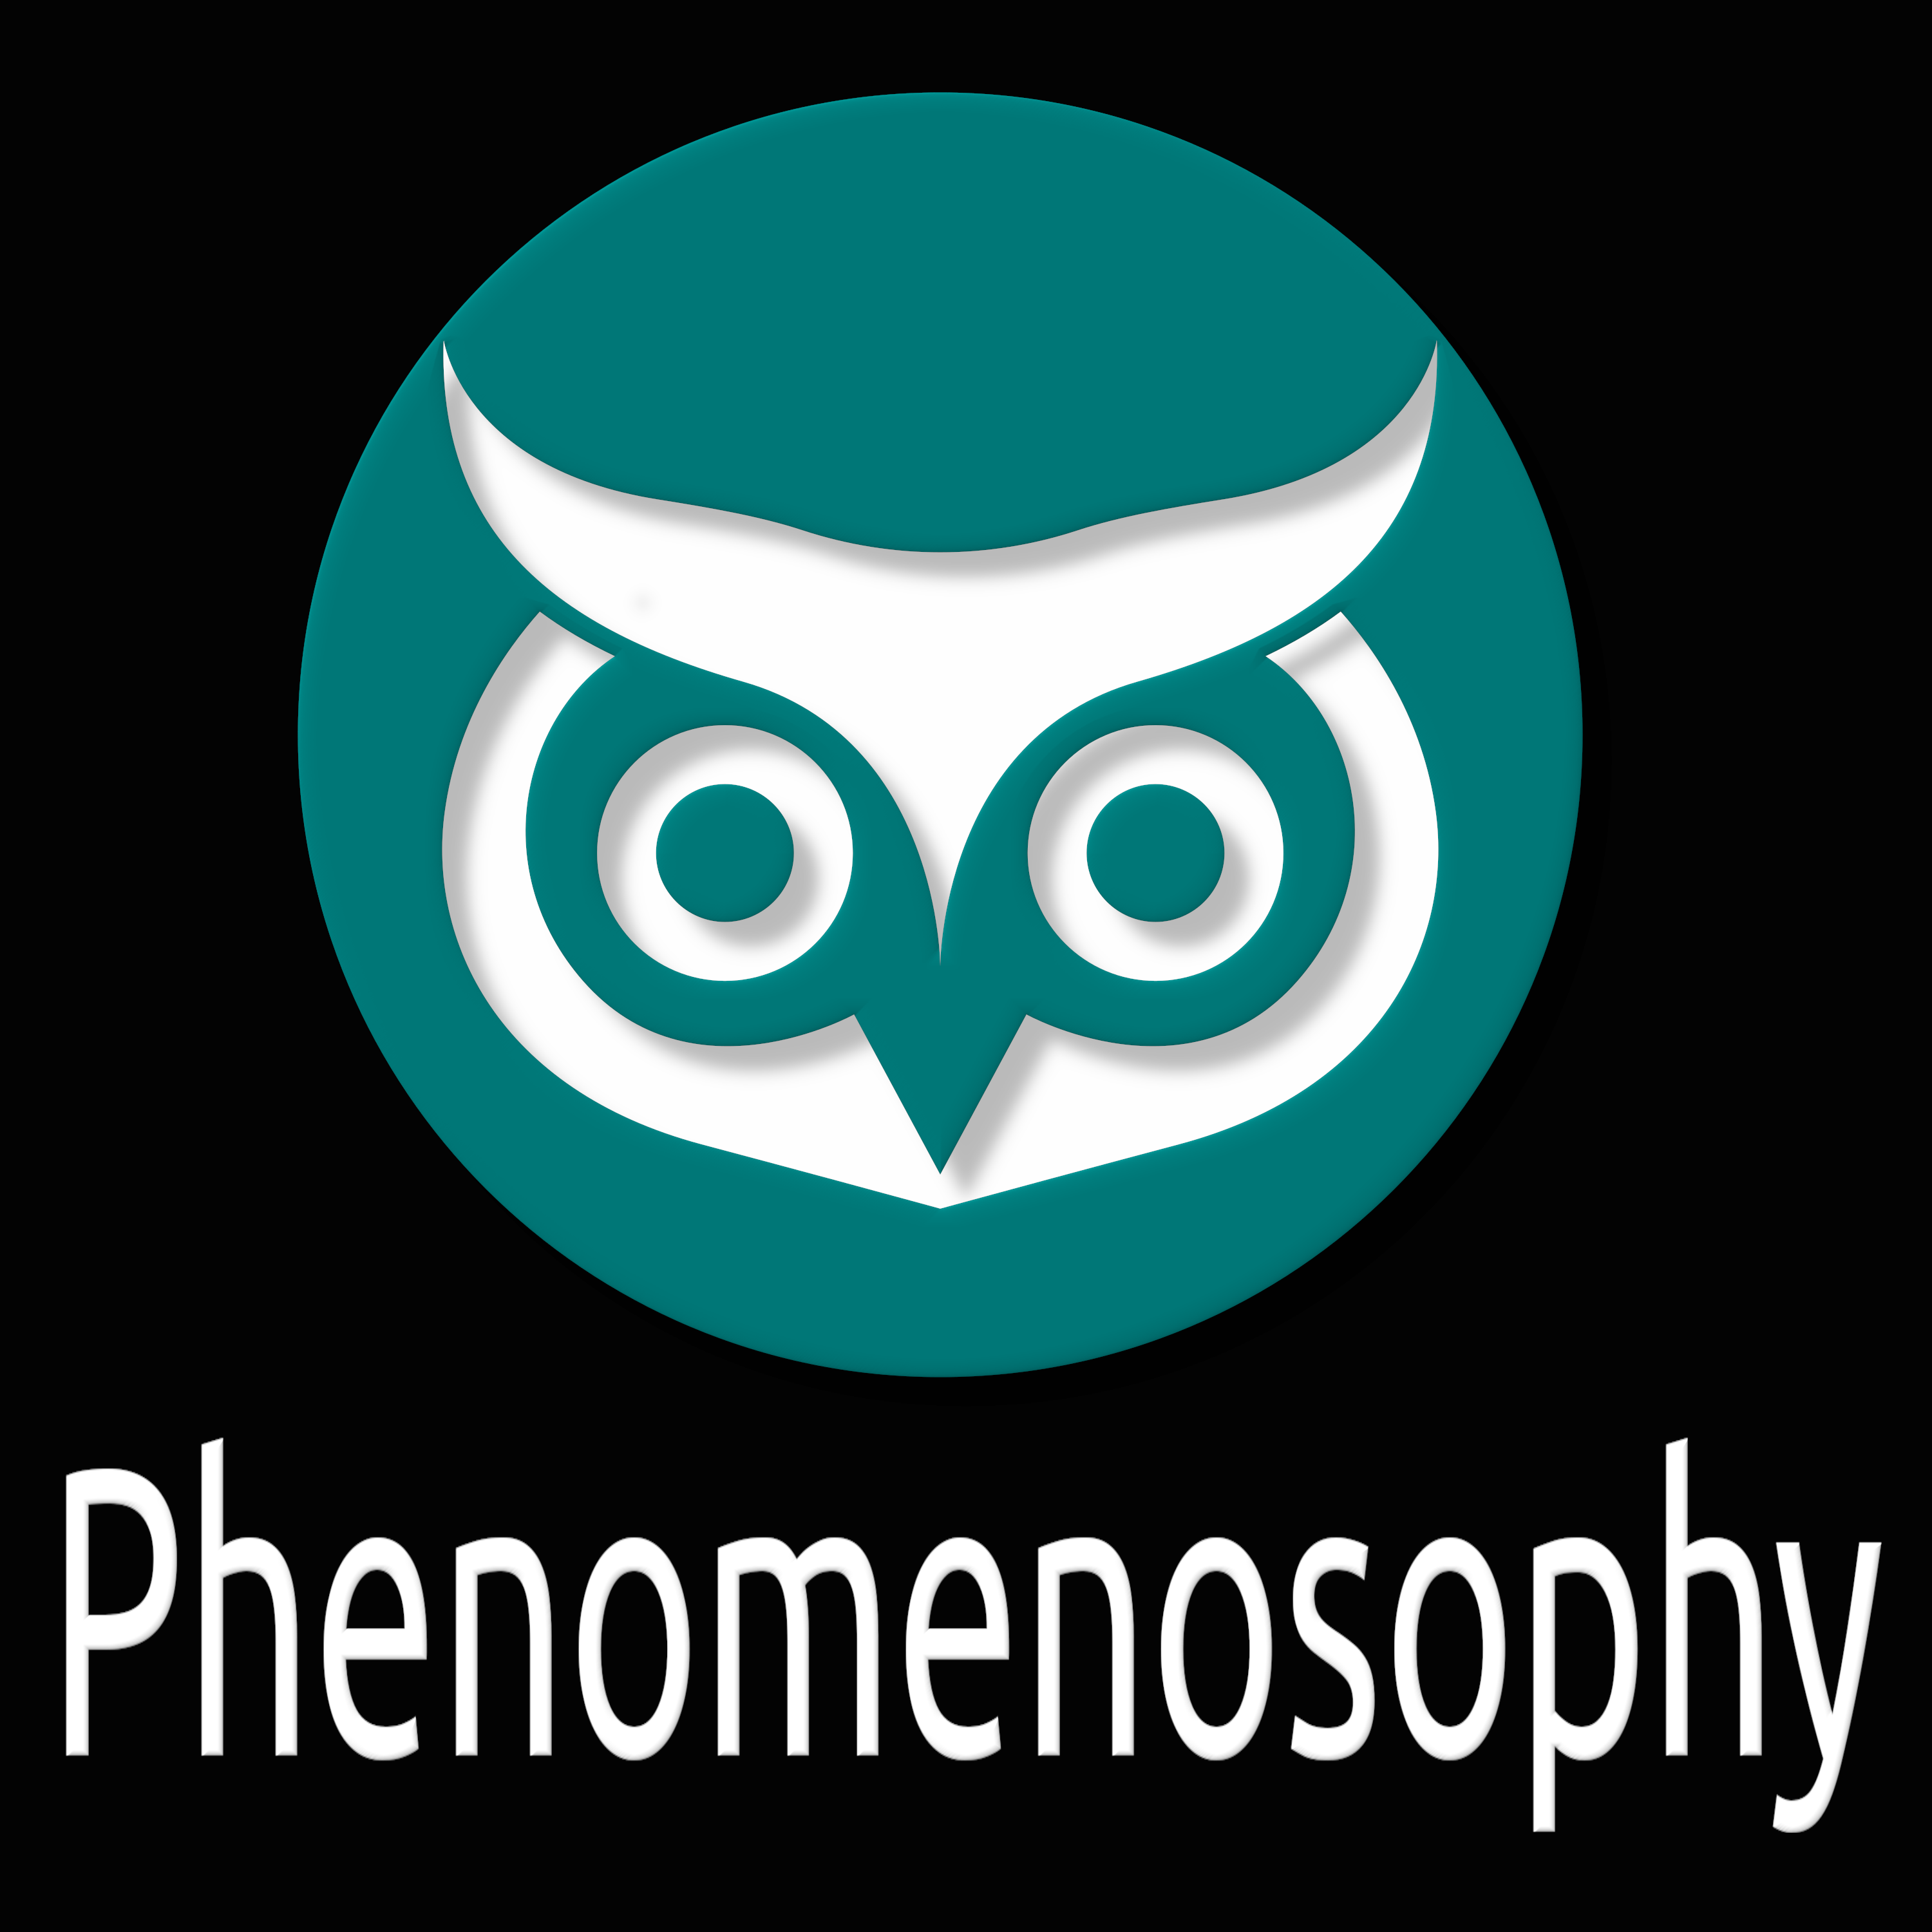 Phenomenosophy